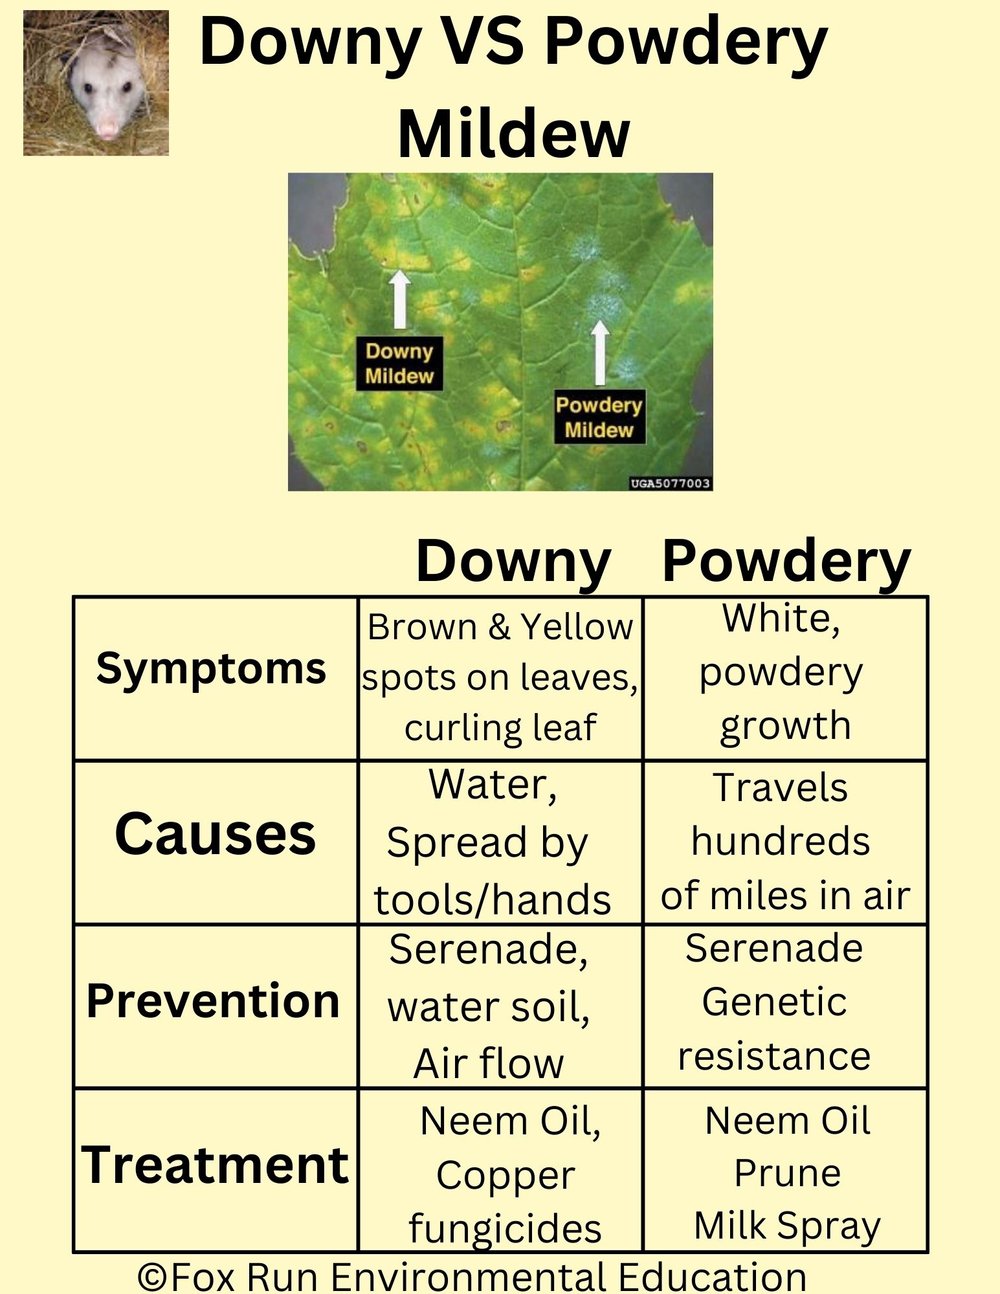 Downy VS. Powdery Mildew